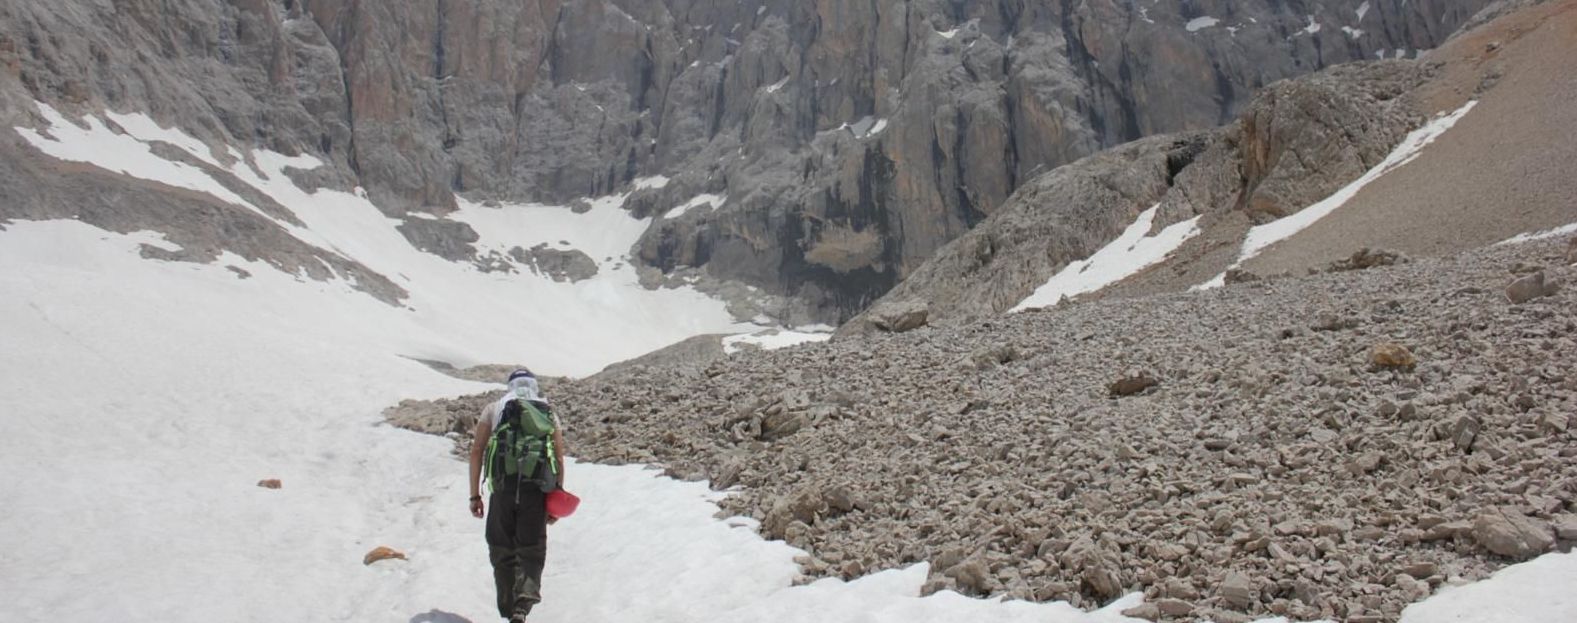 В Турции едва не погиб украинский альпинист: мужчину со сломанной ногой нашли спасатели